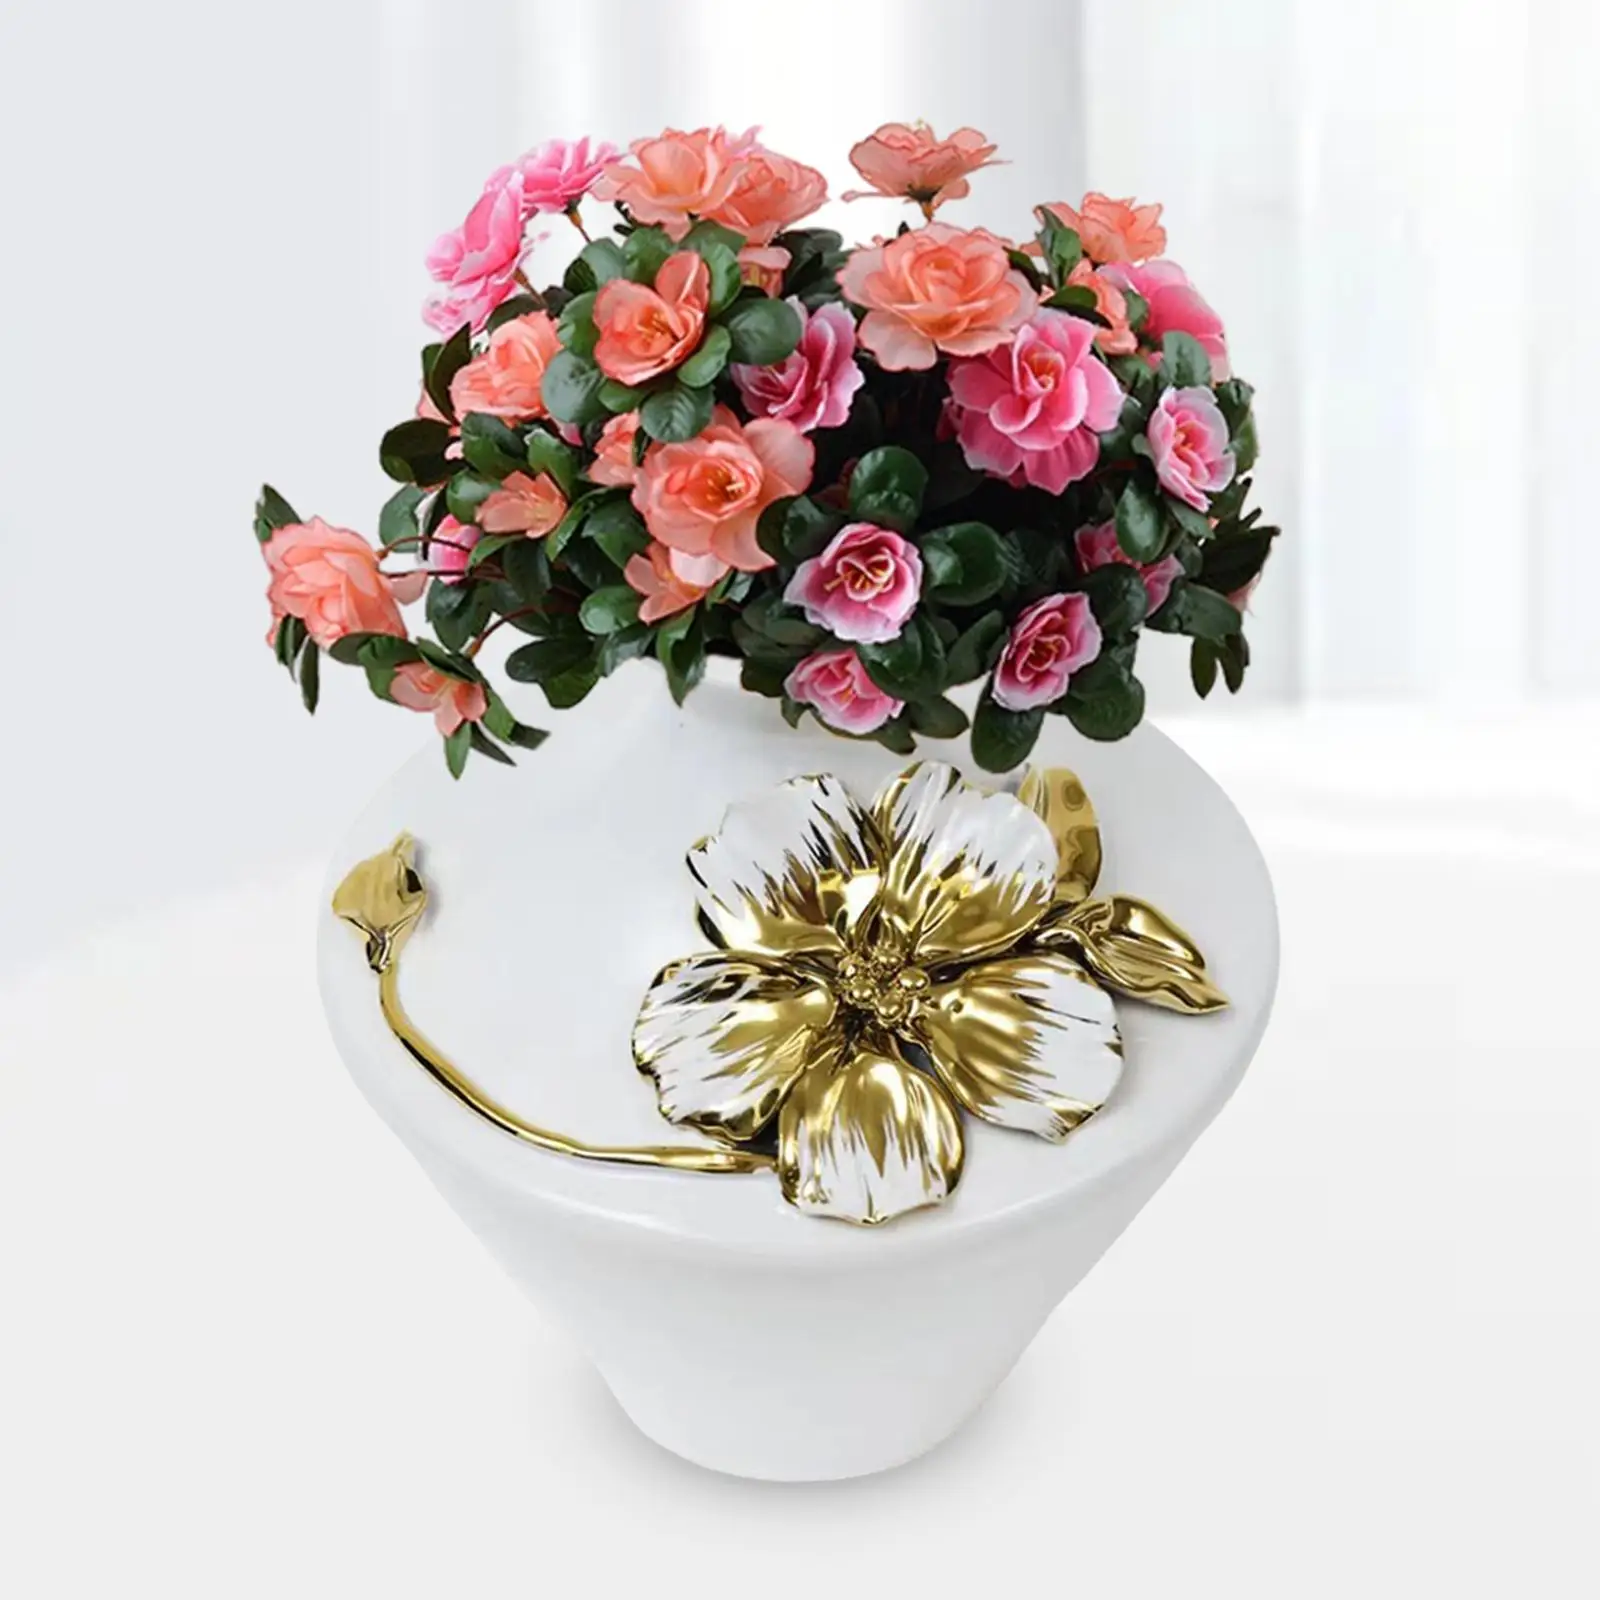 Flower Arrangement Pot Flower Vase Minimalist Decorative Vase for Farmhouse Shelf Table Room Centerpiece Ornaments